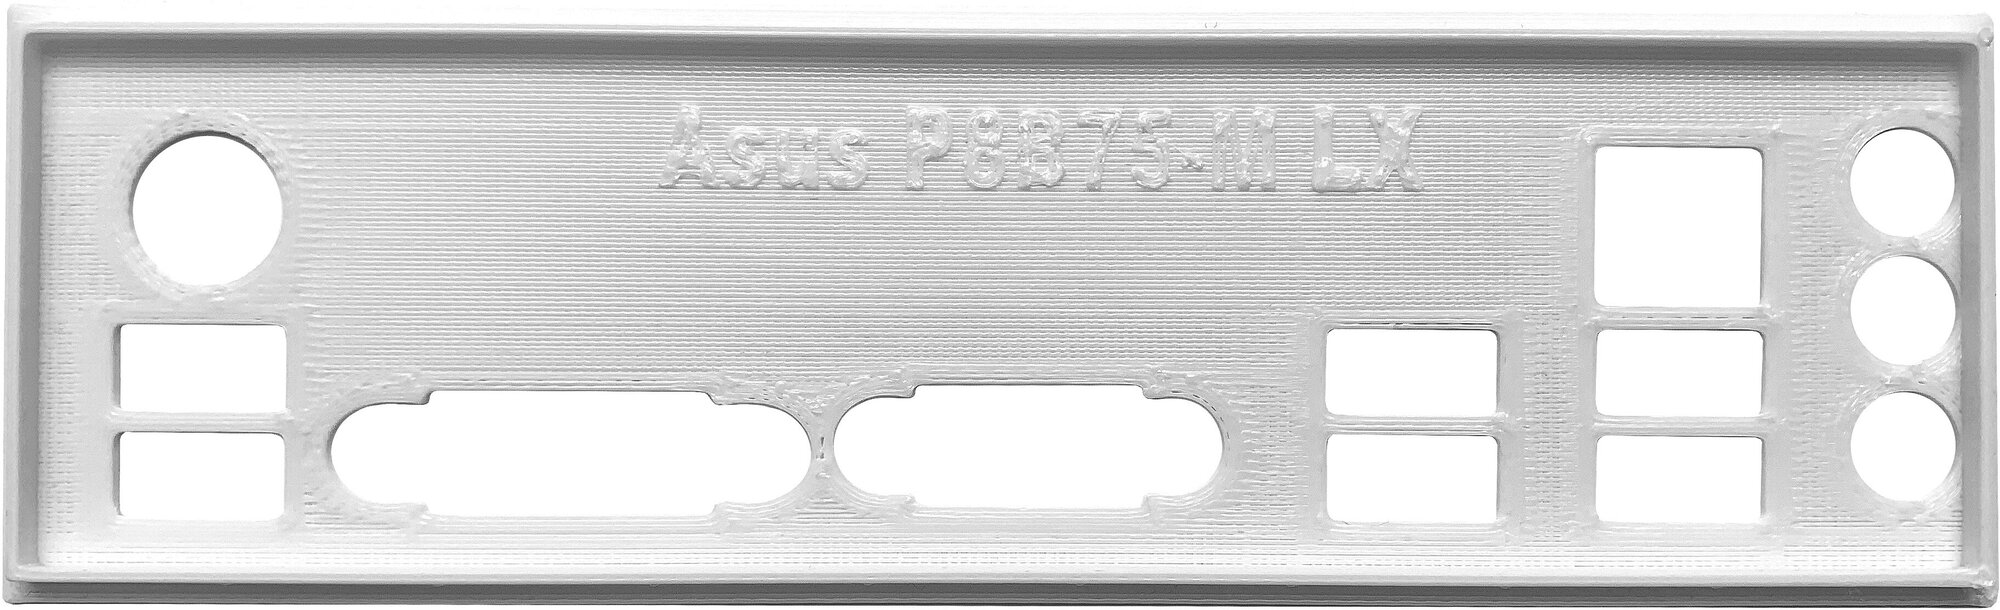 Заглушка для компьютерного корпуса к материнской плате Asus P8B75-M LX white